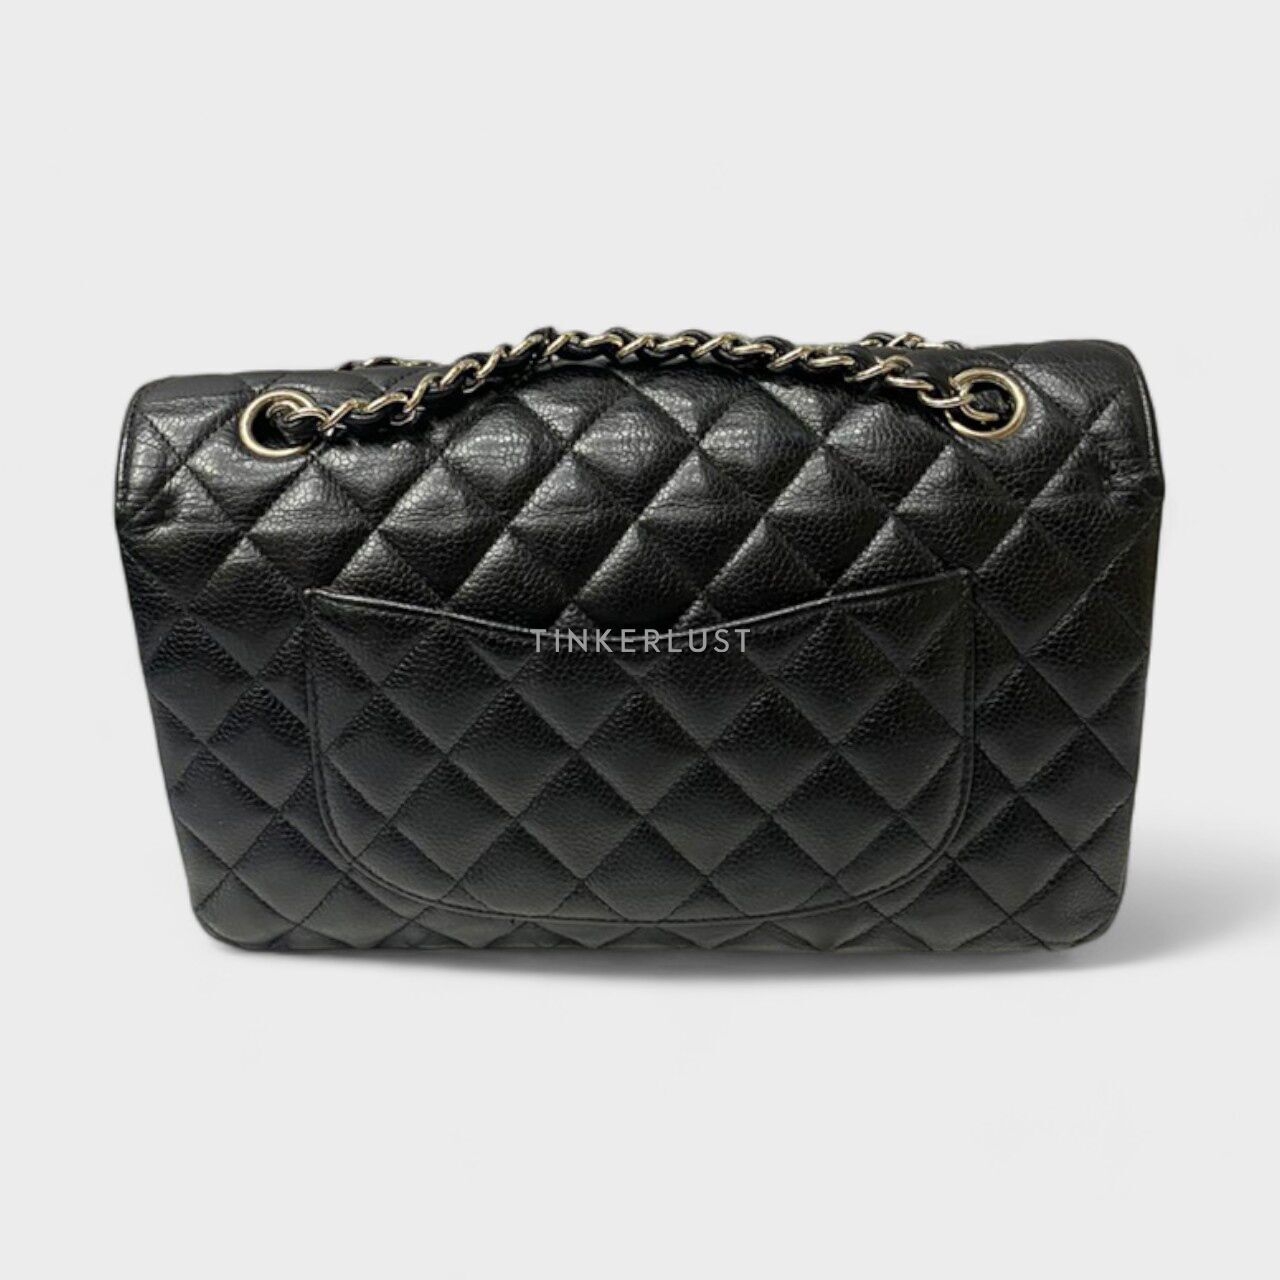 Chanel Classic Medium Black Caviar #25 SHW Shoulder Bag